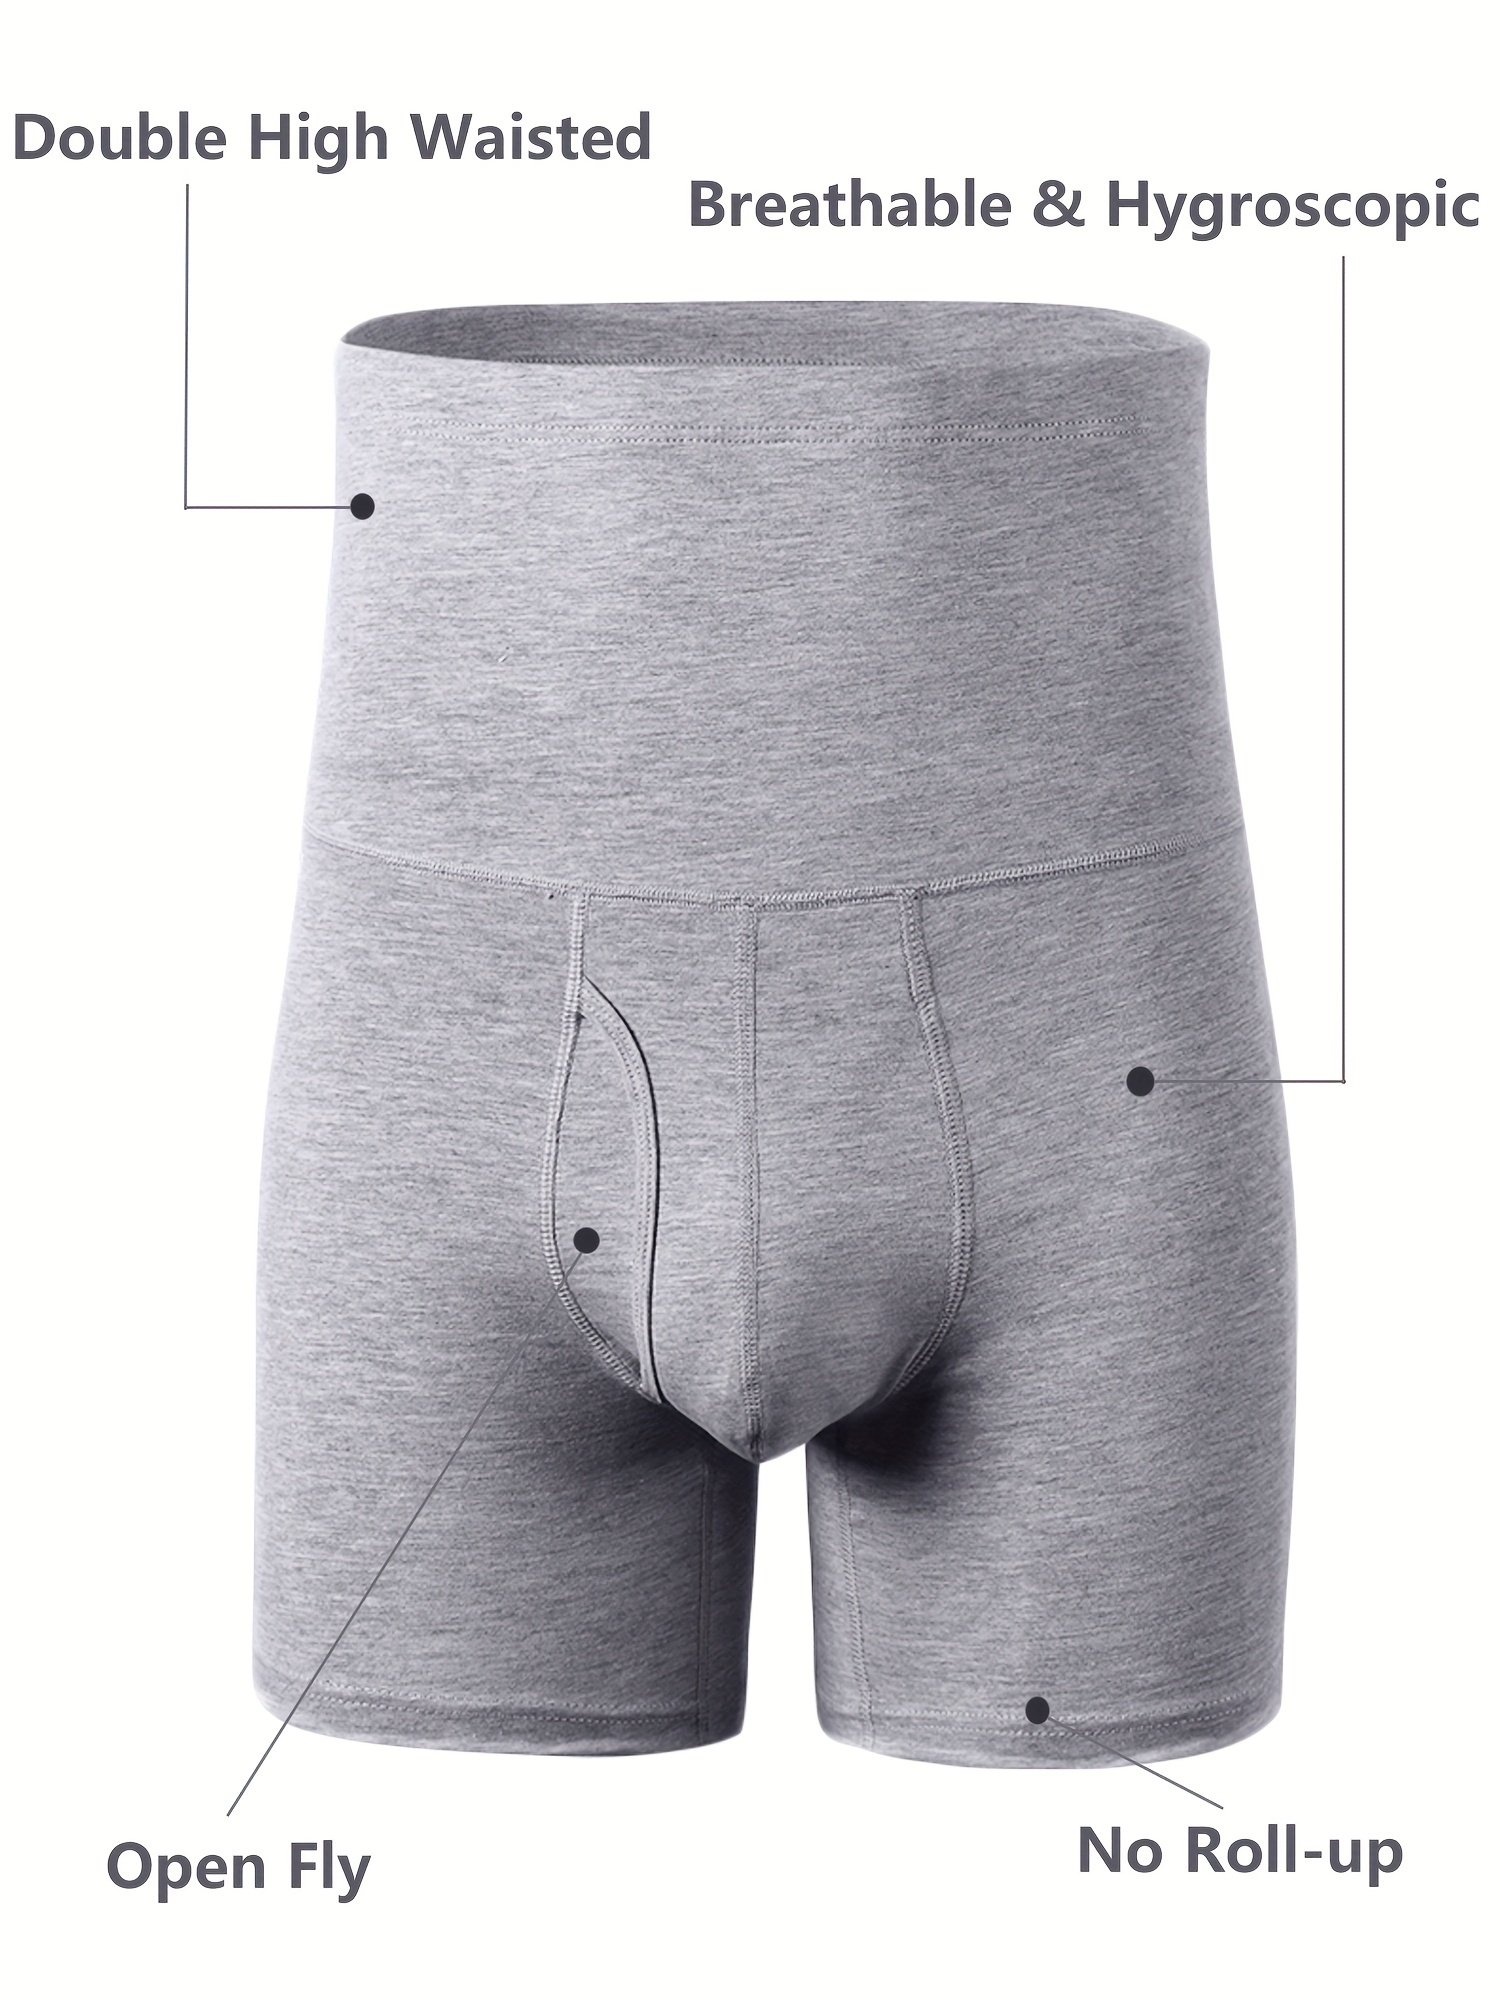 Plus Size Men's Stretch Boxer Brief Underwear Stretch Underwear 1